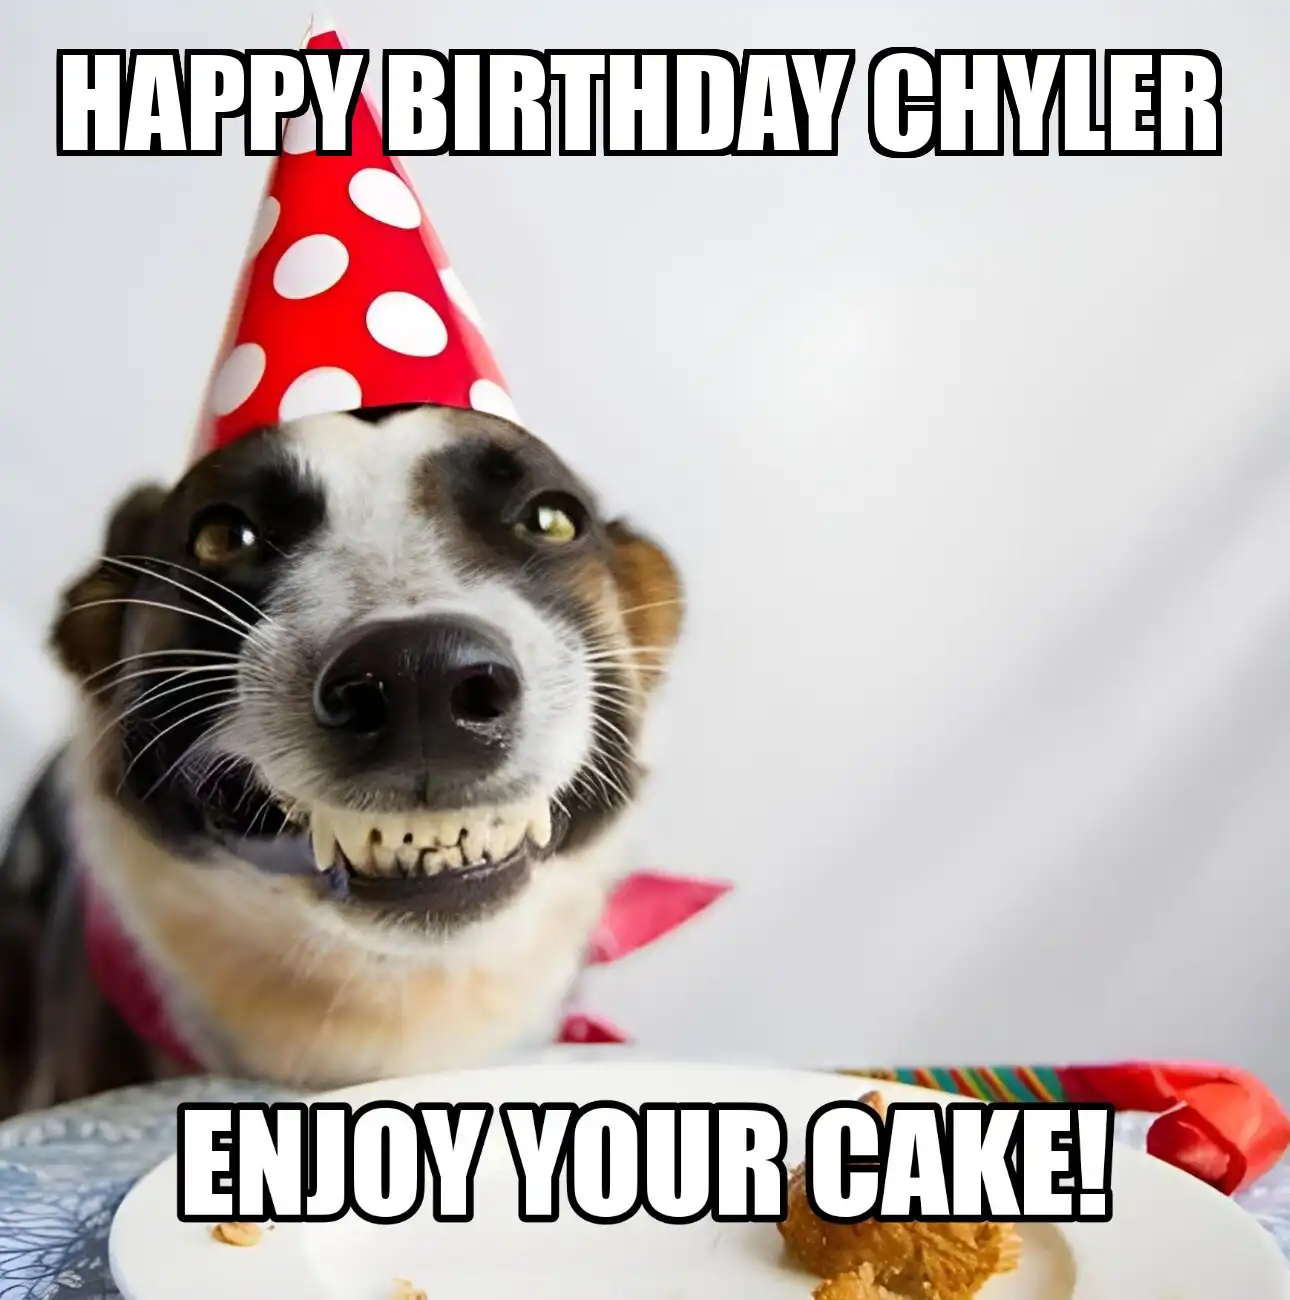 Happy Birthday Chyler Enjoy Your Cake Dog Meme